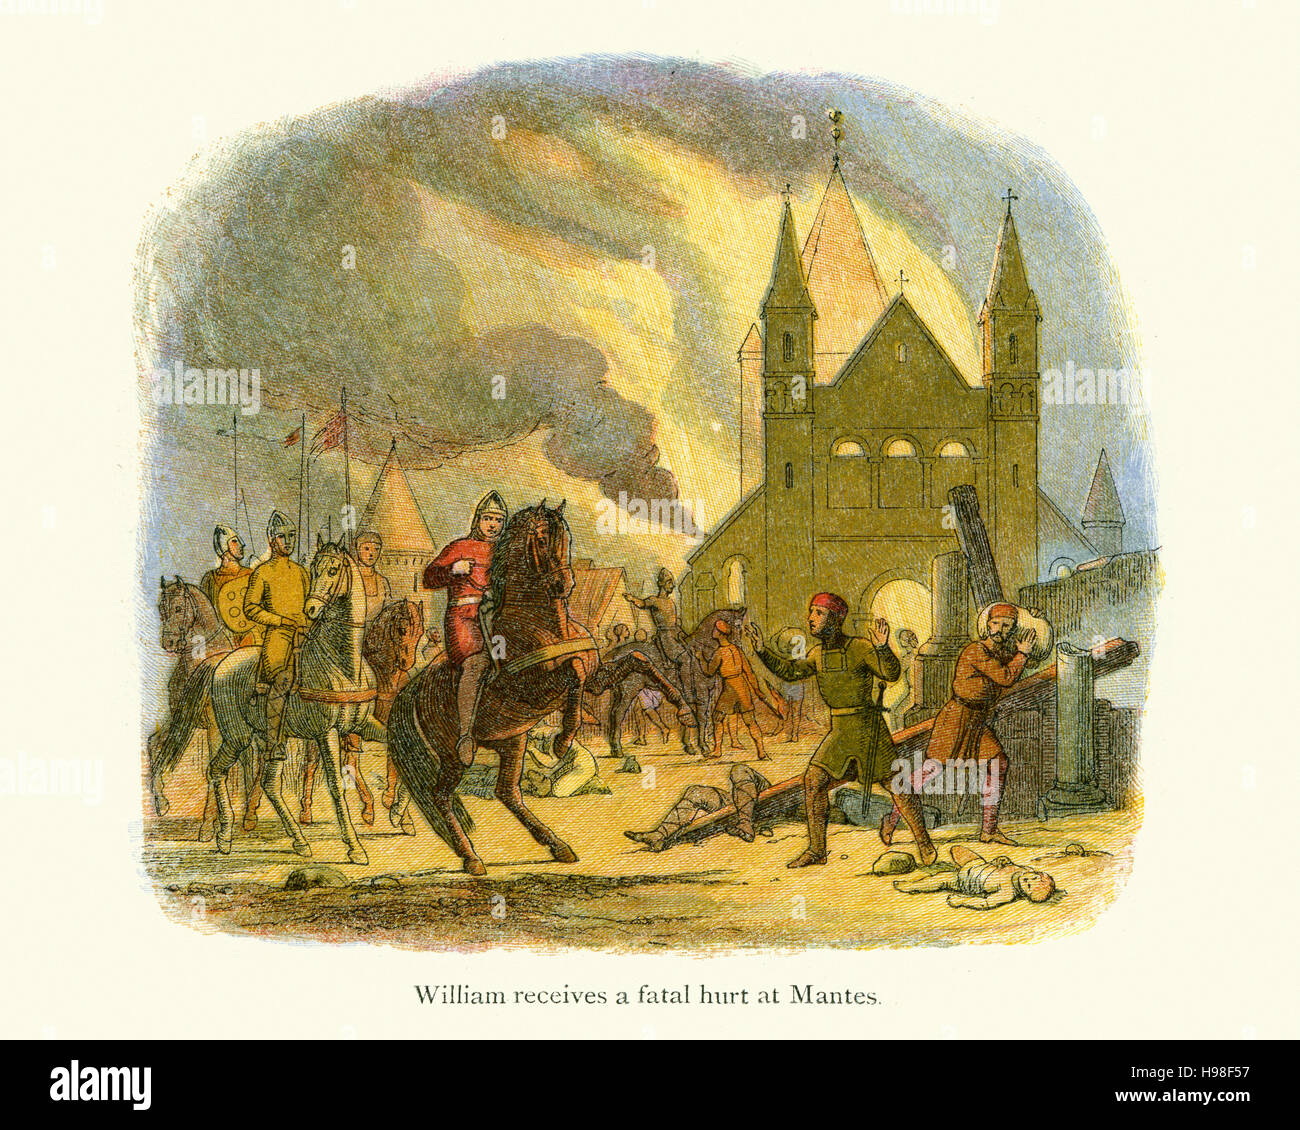 König William des Eroberers erhalten eine tödliche Wunde bei Mantes. Im Jahre 1087 in Frankreich brannte William Mantes 50 km westlich von Paris, belagerte die Stadt. Howeve Stockfoto